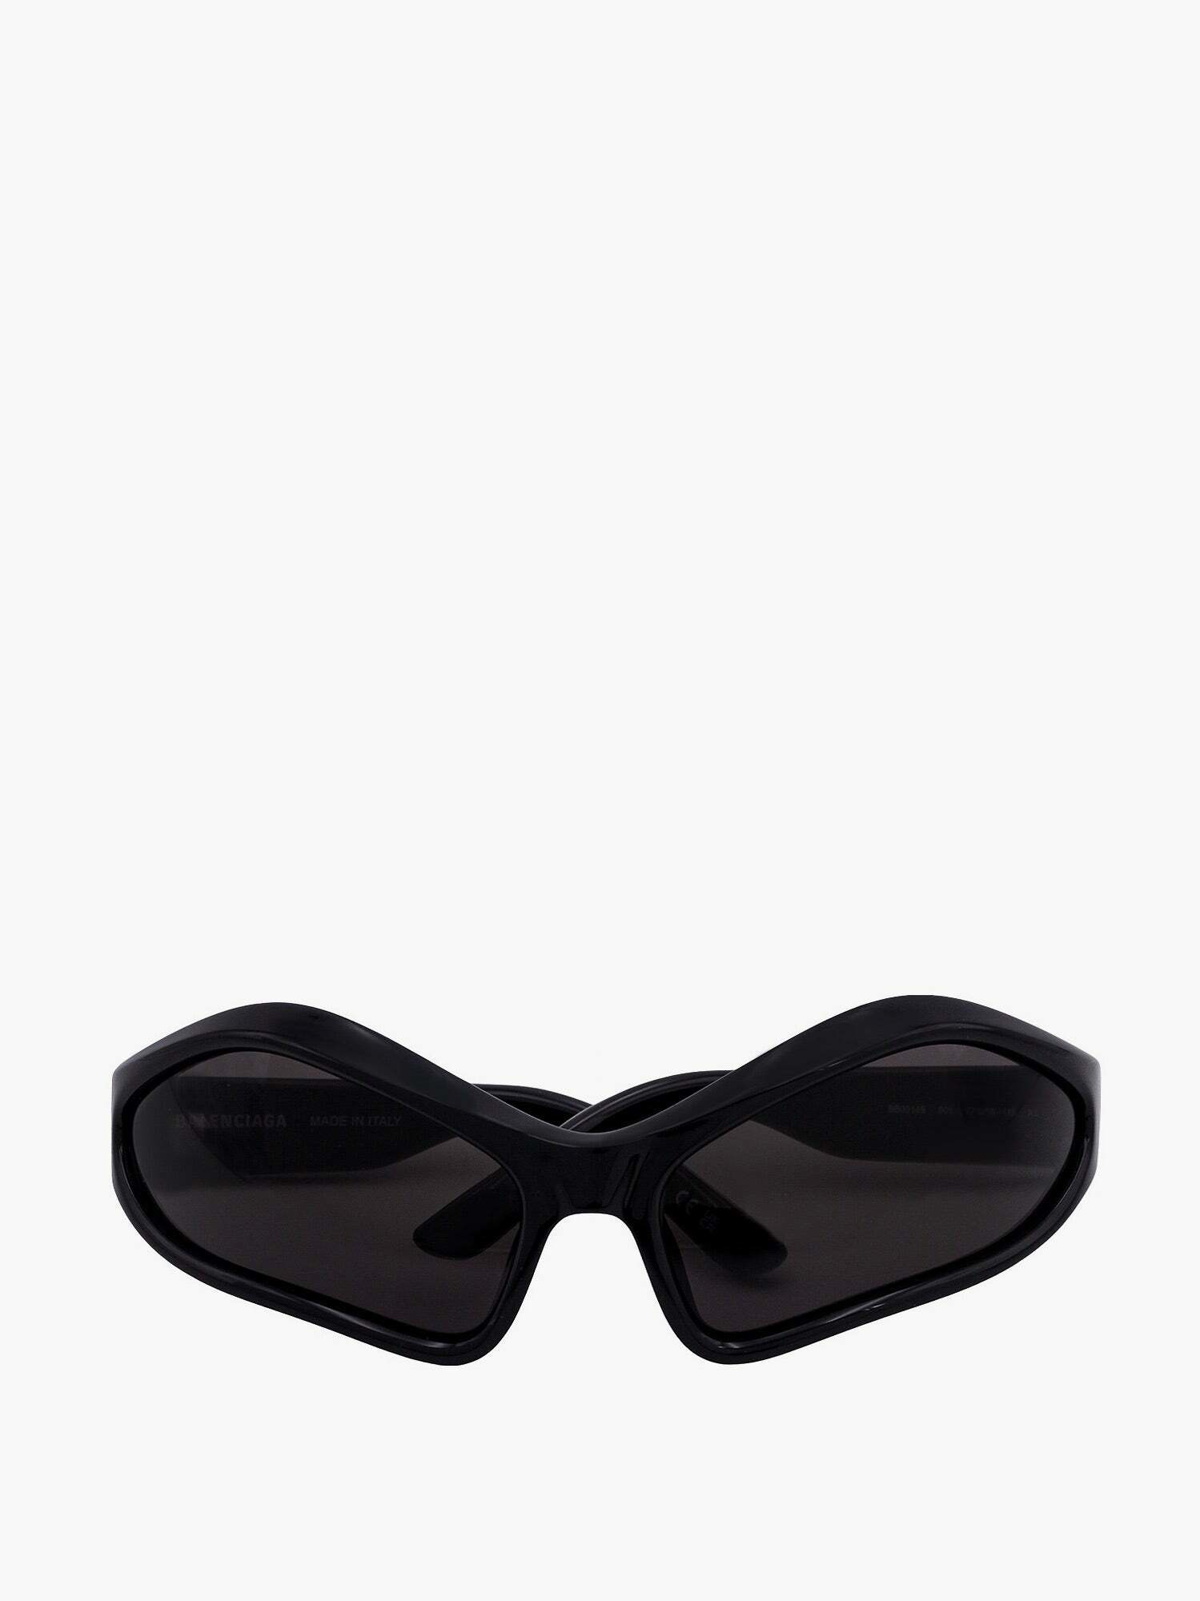 BB Monogram Oval Sunglasses in Black - Balenciaga